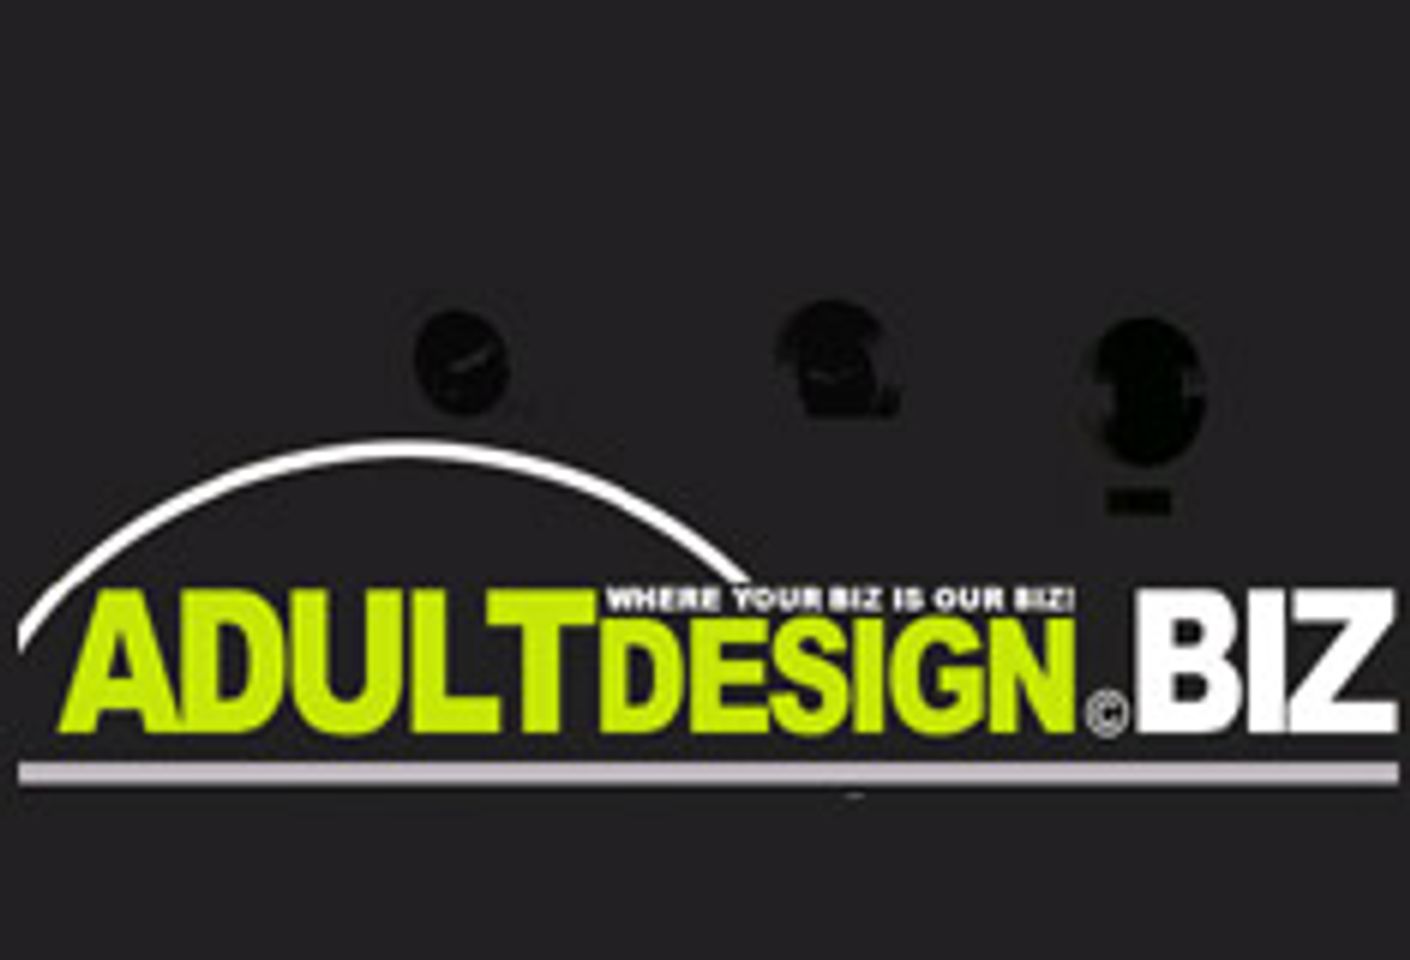 AdultDesignStudios Launches Adultdesign.biz